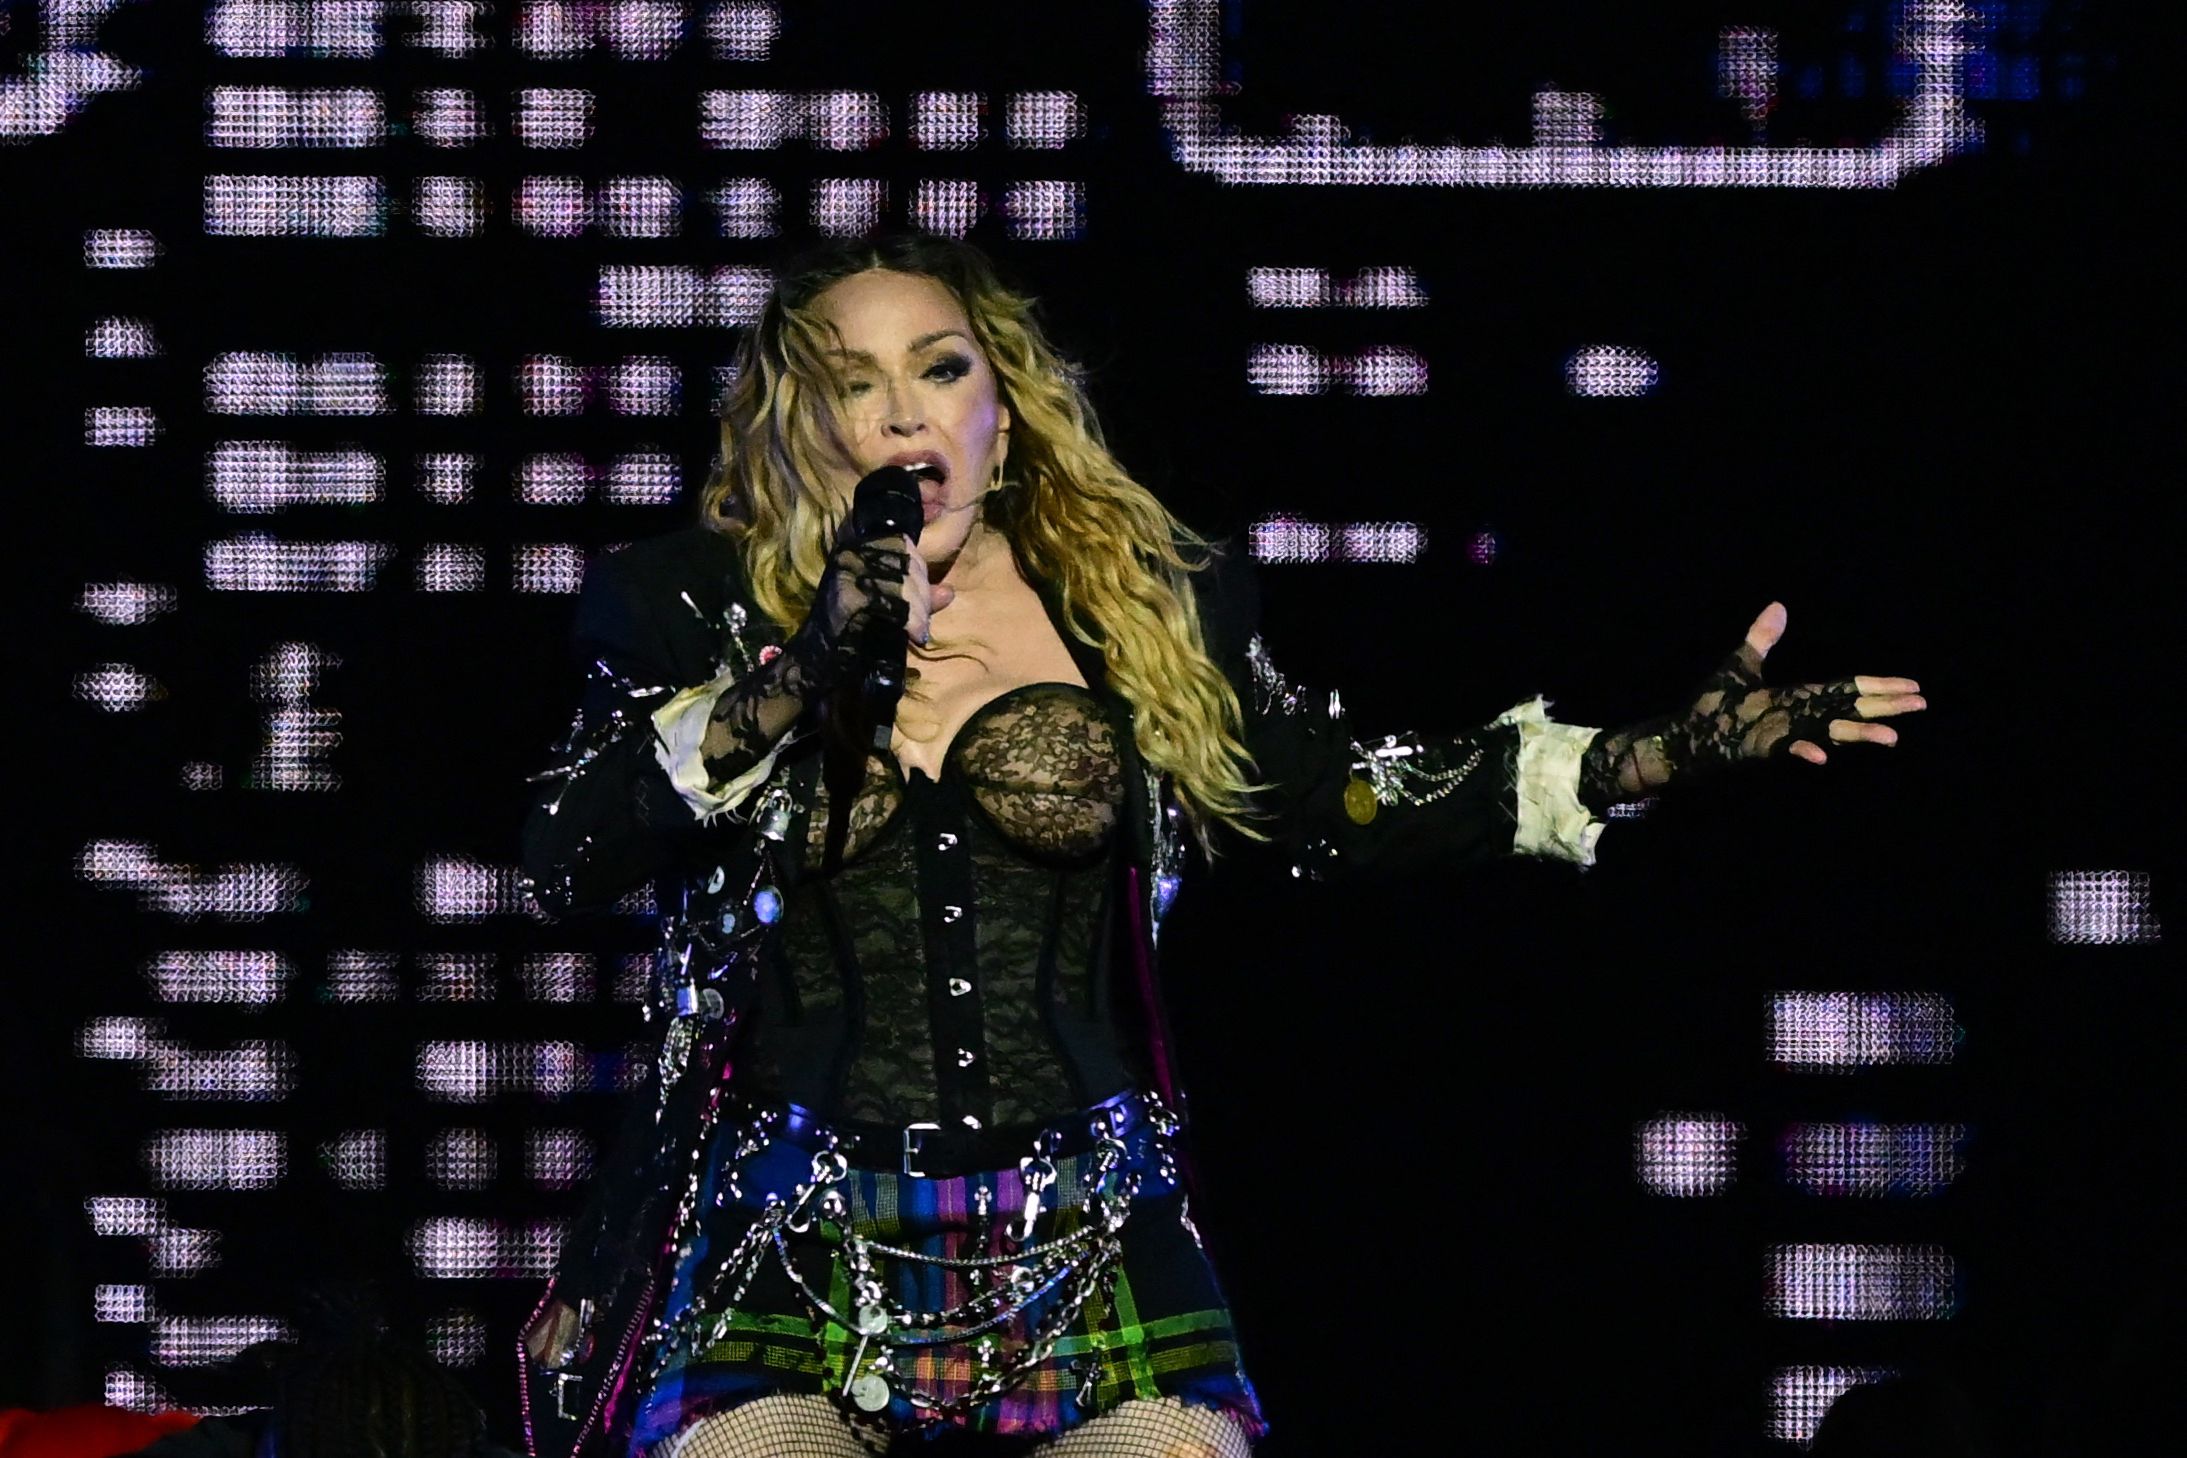 Madonna continúa llenando estadios luego de cuatro décadas de carrera musical. (Foto Prensa Libre: AFP)